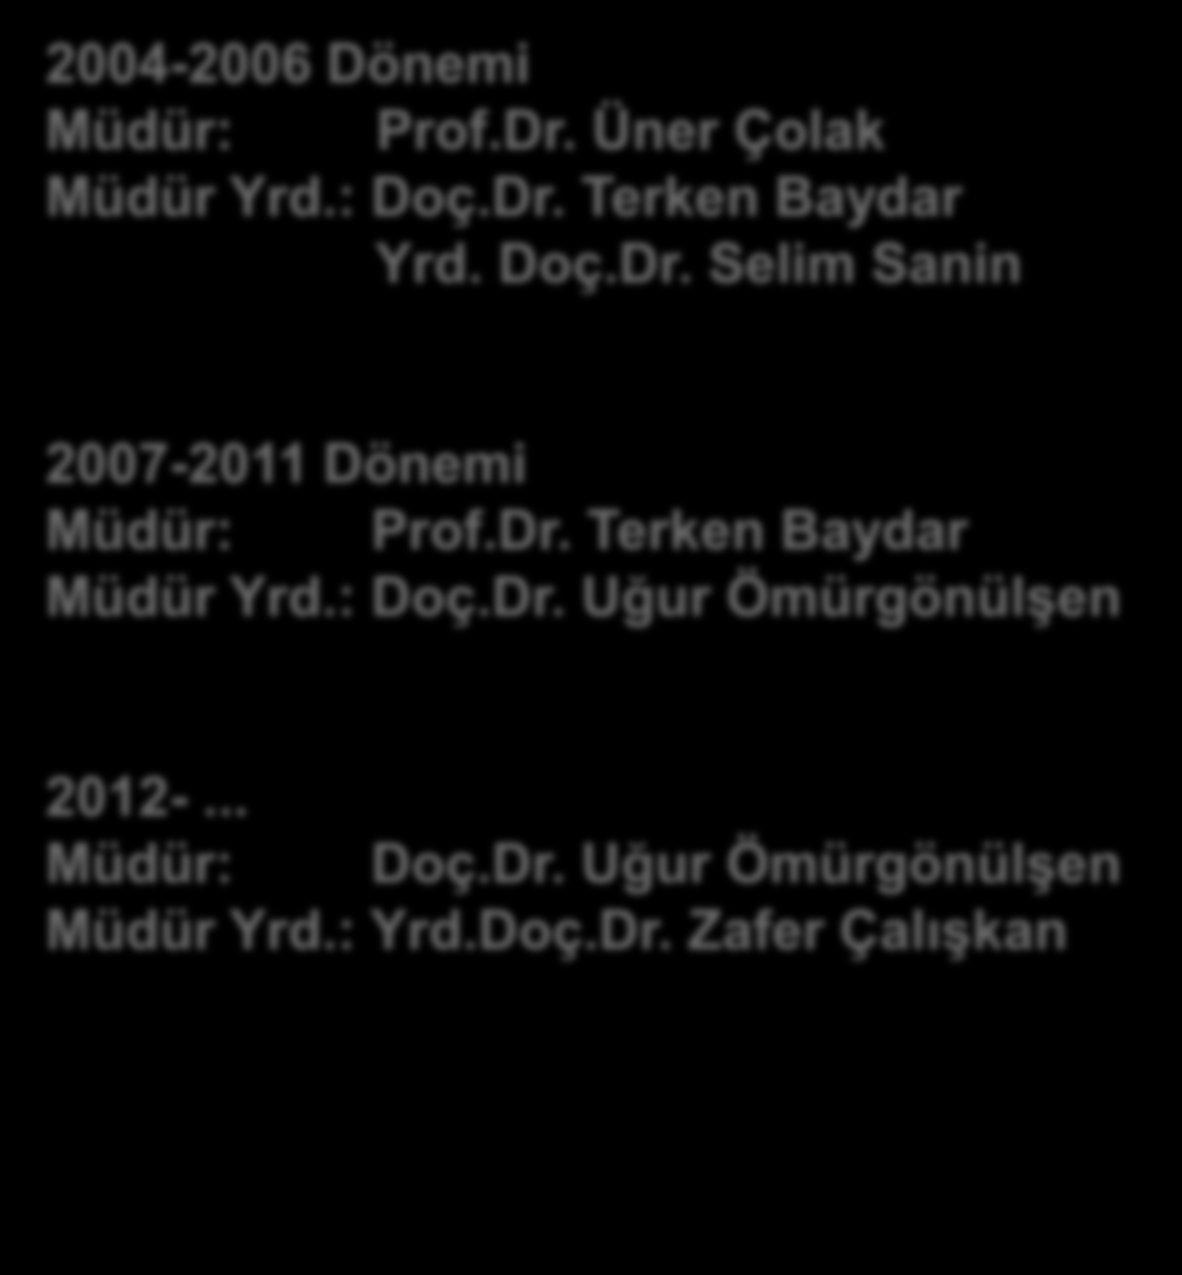 HÜSEM İN YÖNETİM YAPISI 2004-2006 Dönemi Müdür: Prof.Dr. Üner Çolak Müdür Yrd.: Doç.Dr. Terken Baydar Yrd. Doç.Dr. Selim Sanin 2007-2011 Dönemi Müdür: Prof.